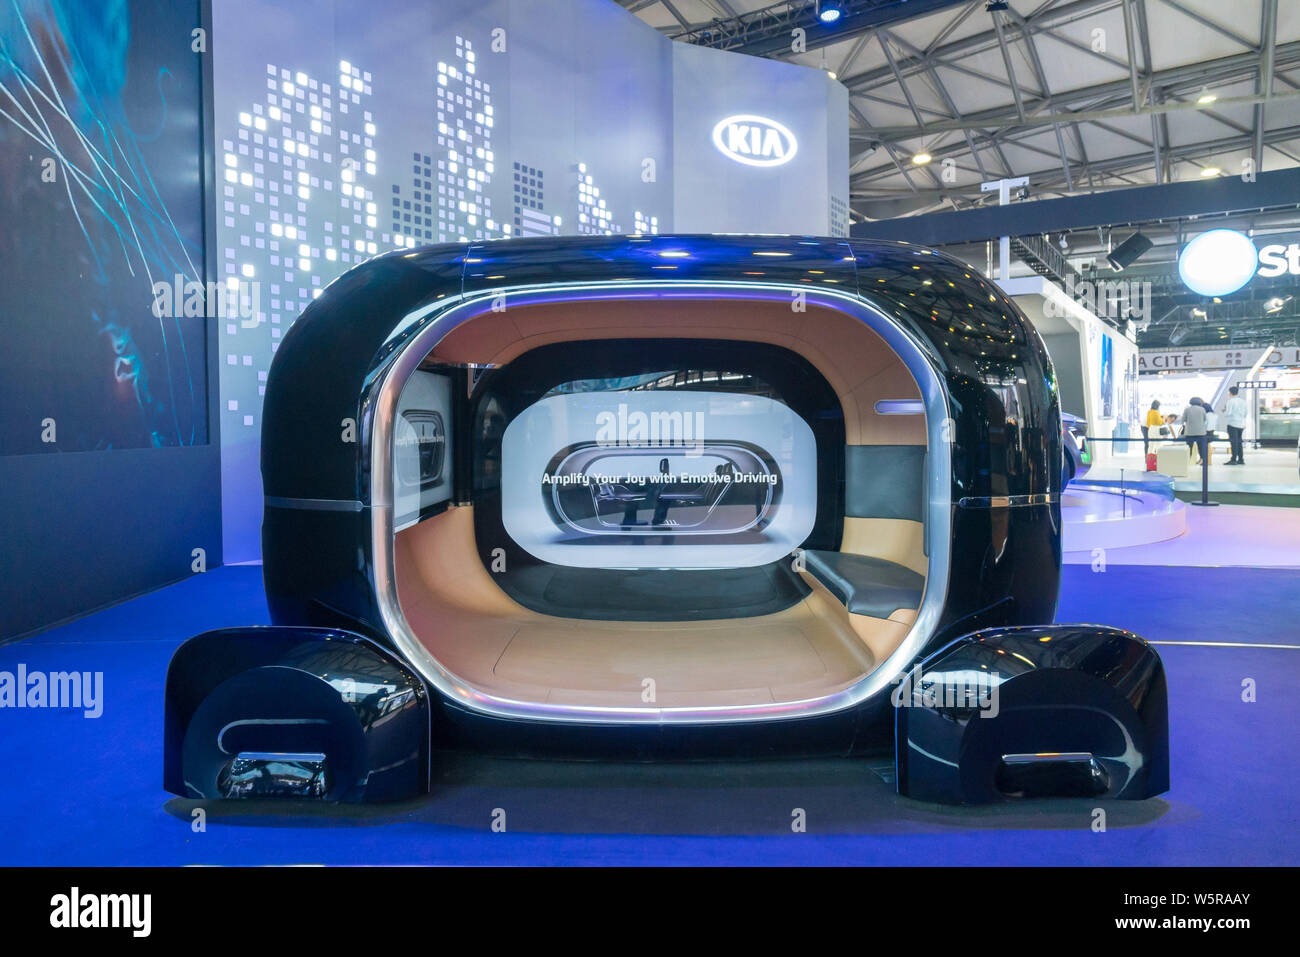 Ein unbemanntes Fahrzeug von Kia Motors wird während der 2019 International Consumer Electronics Show (CES Asien Asien 2019) in Shanghai, China angezeigt Stockfoto